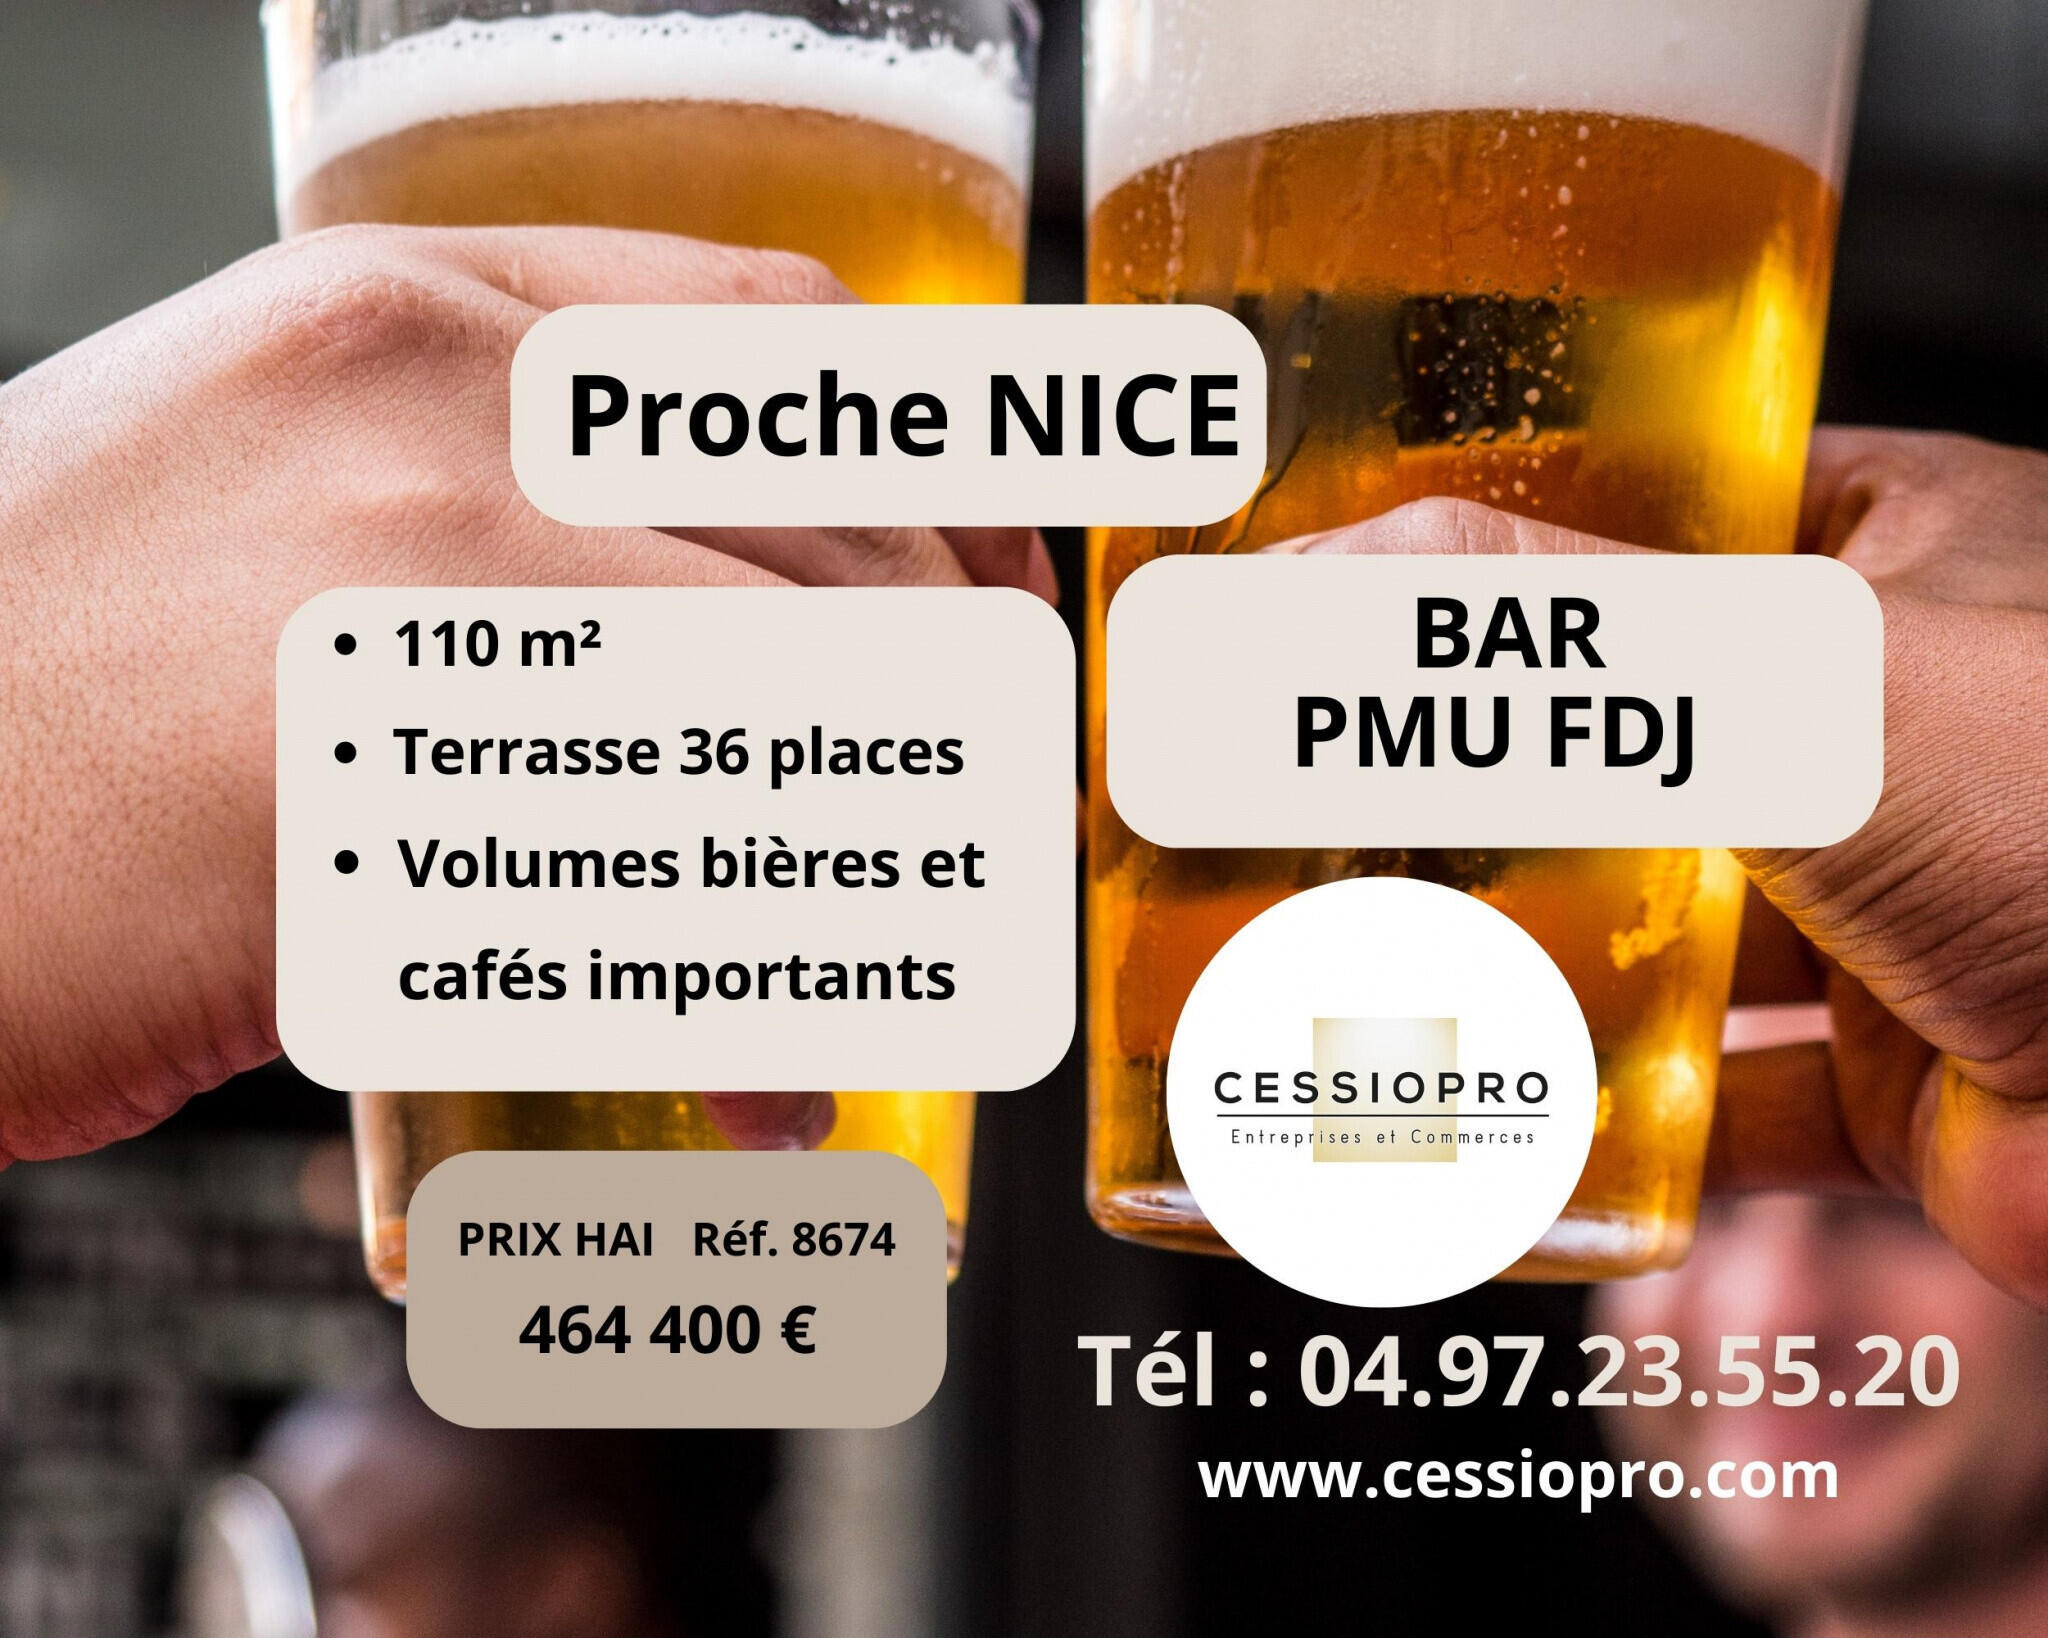 Vend bar pur et PMU en centre-ville proche de Nice